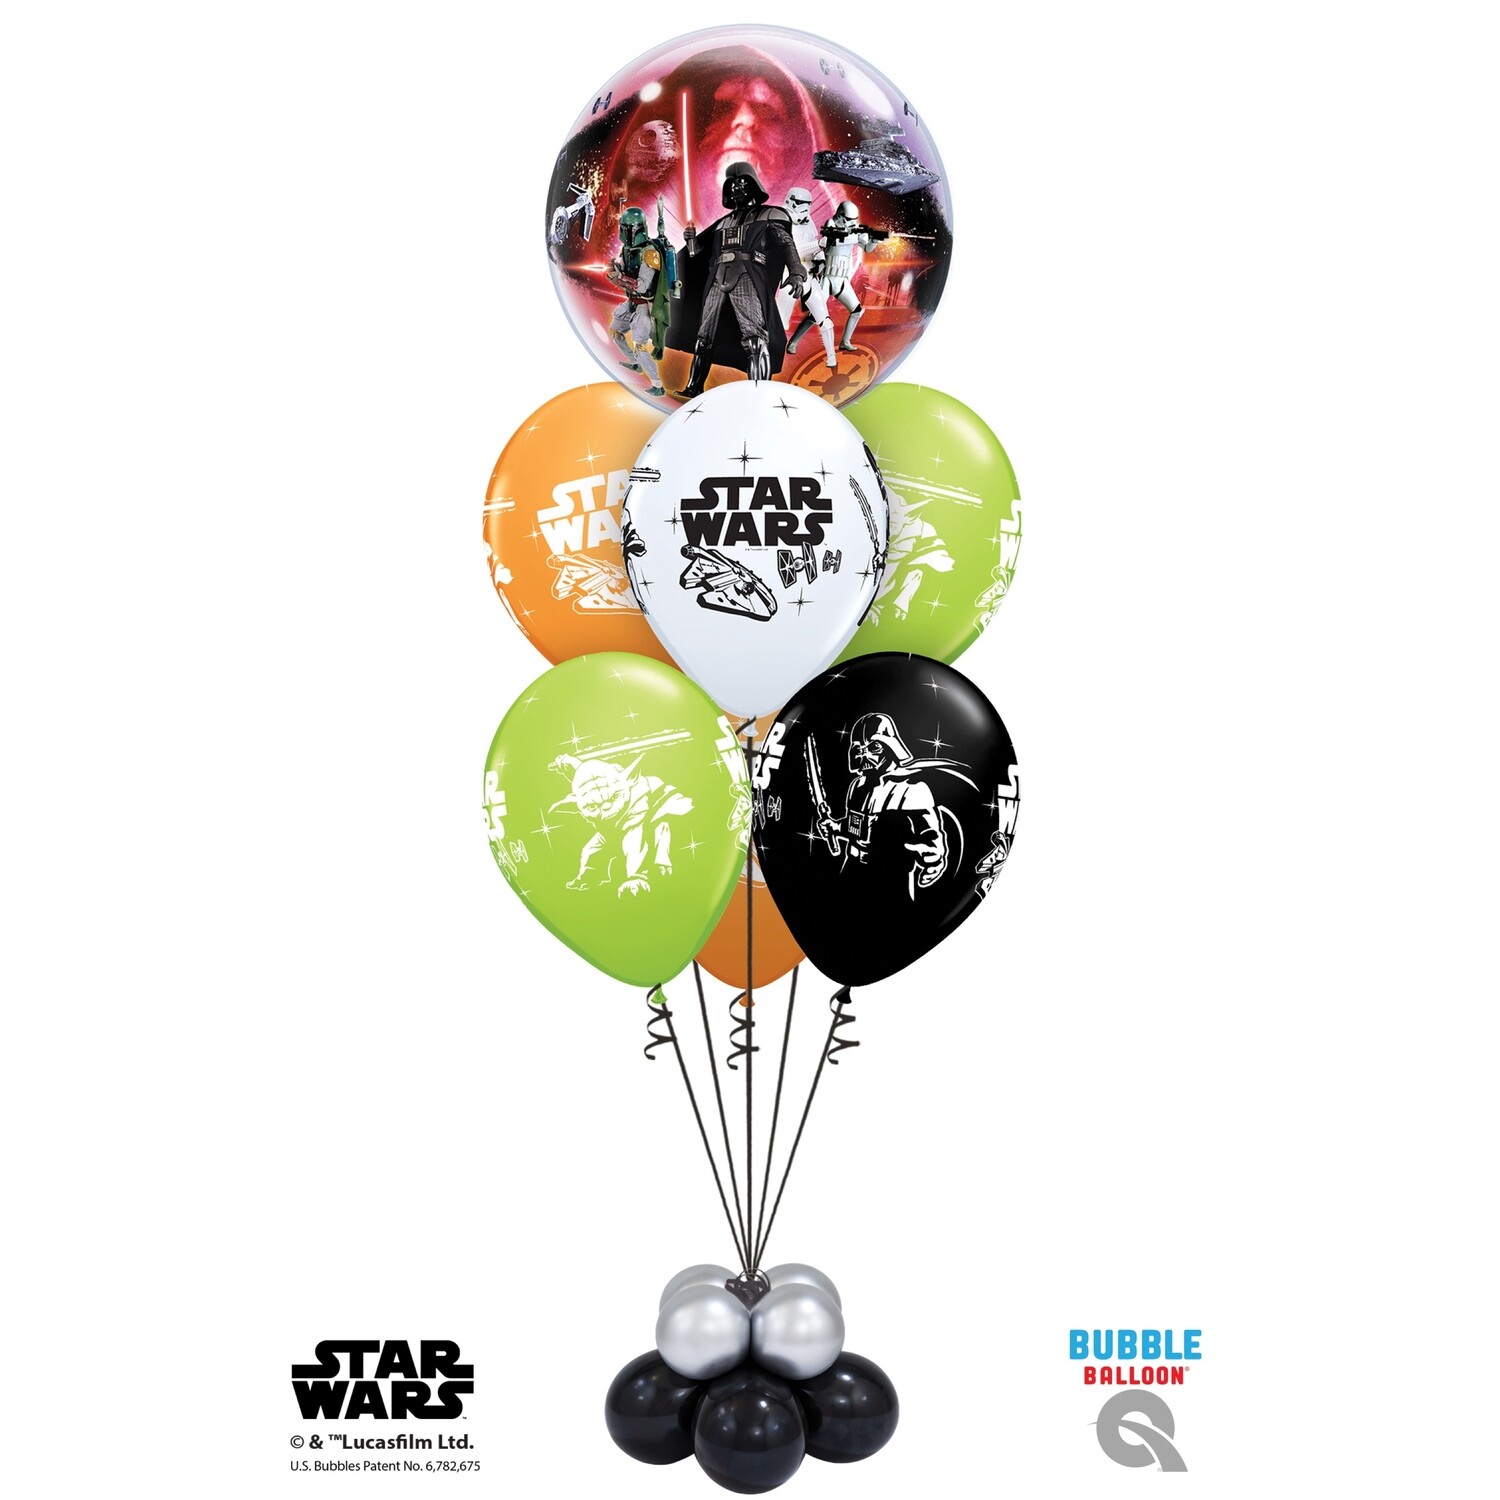 Star Wars Balloon Bouquet Designs